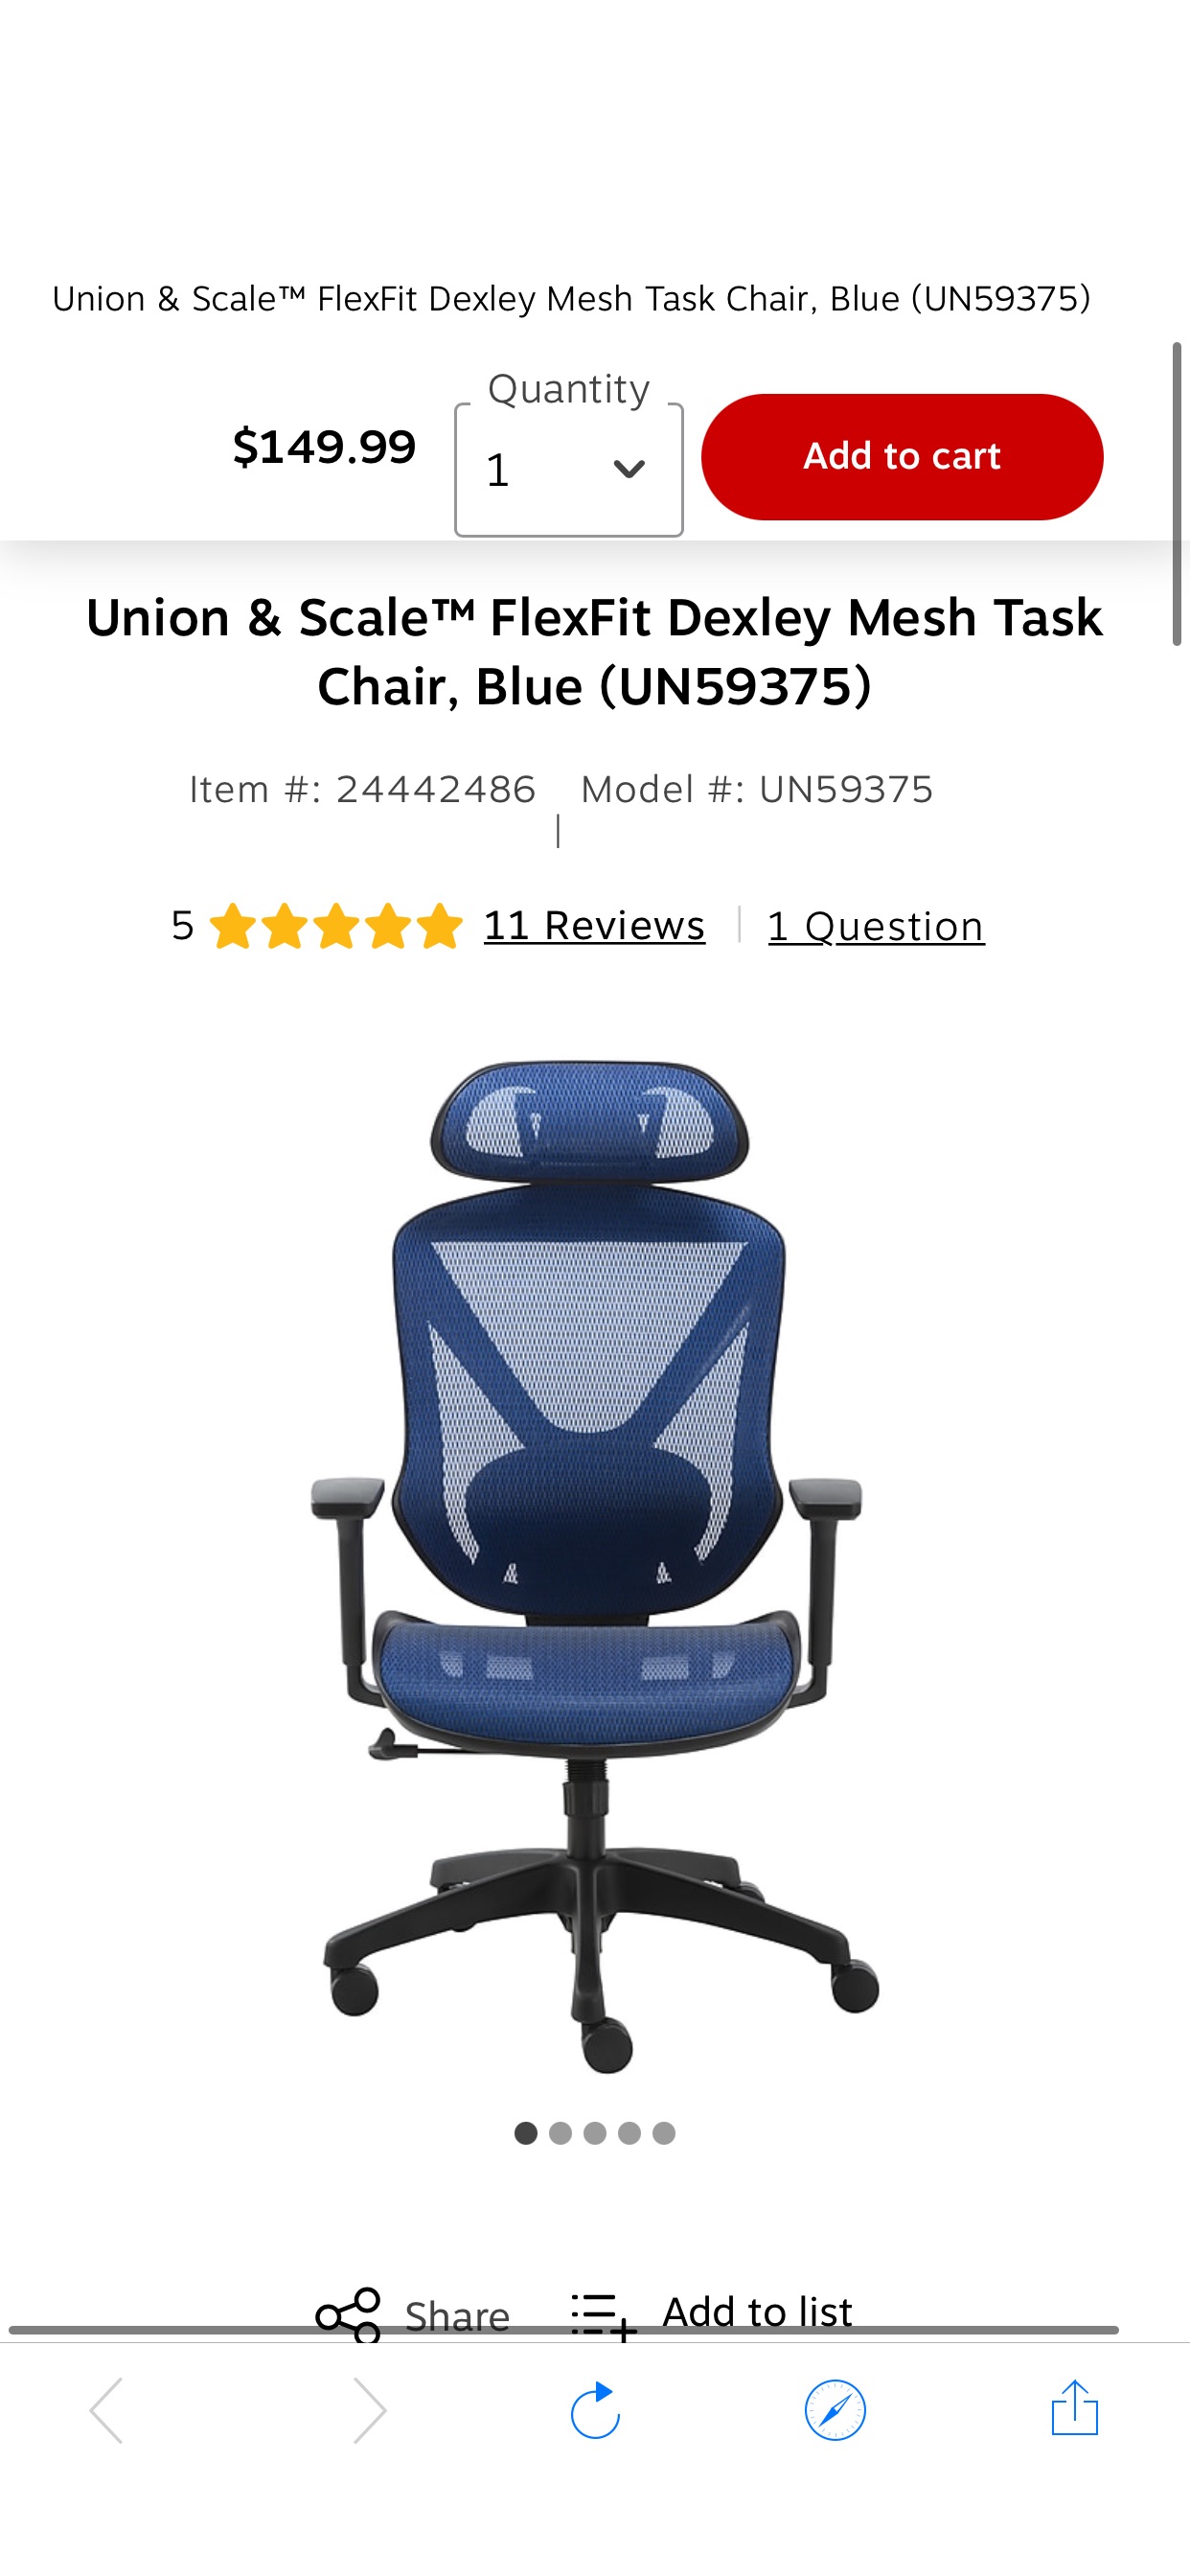 Union & Scale™ FlexFit电脑椅 Dexley Mesh Task Chair, Blue (UN59375) at Staples